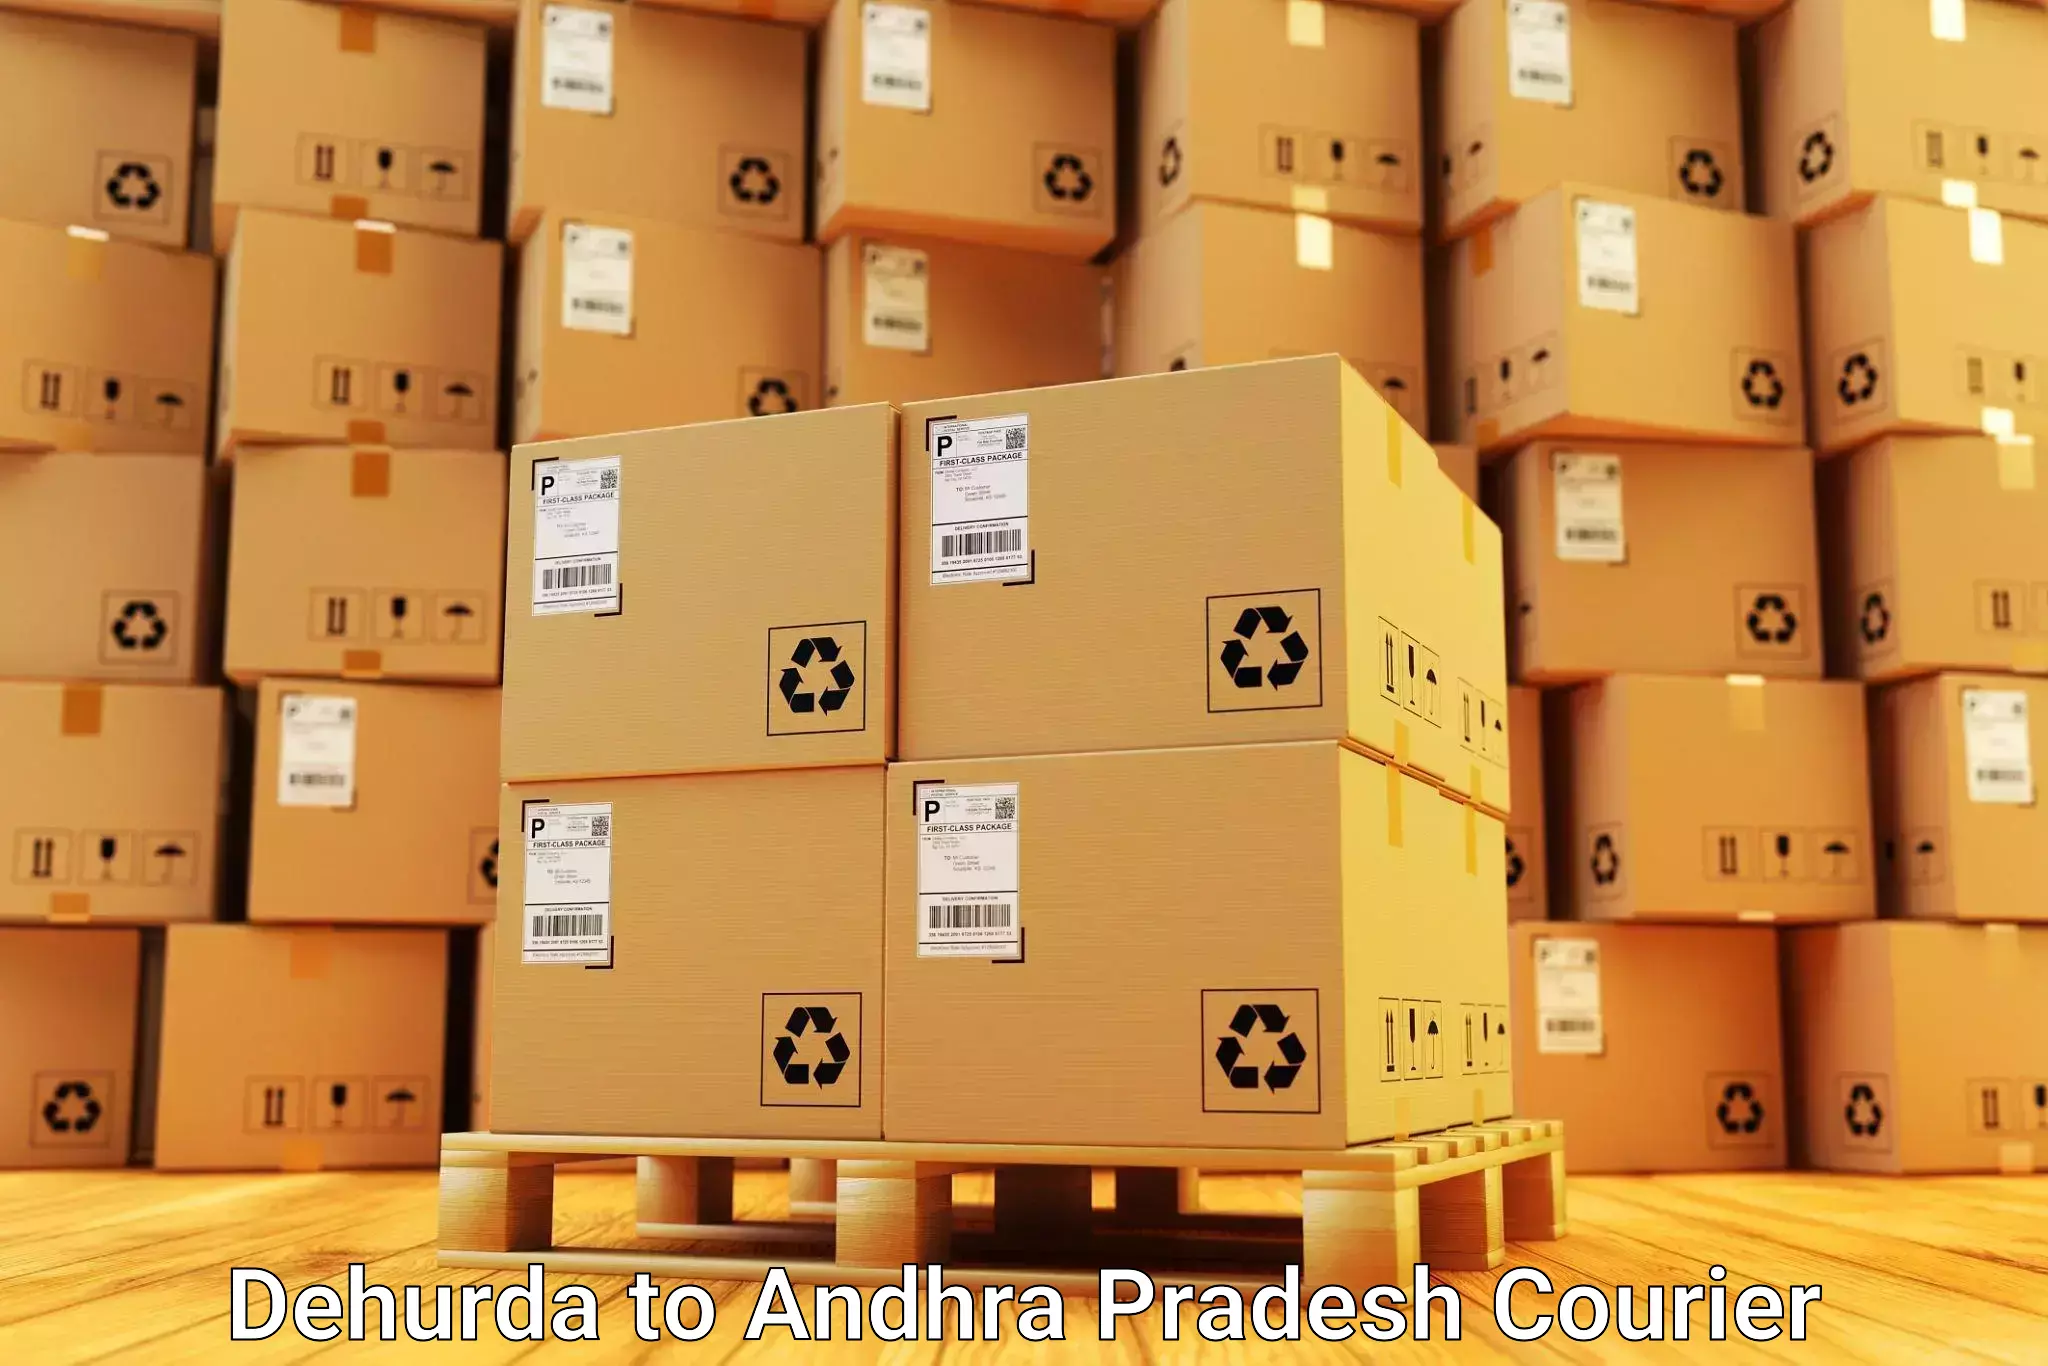 Furniture delivery service in Dehurda to Andhra Pradesh